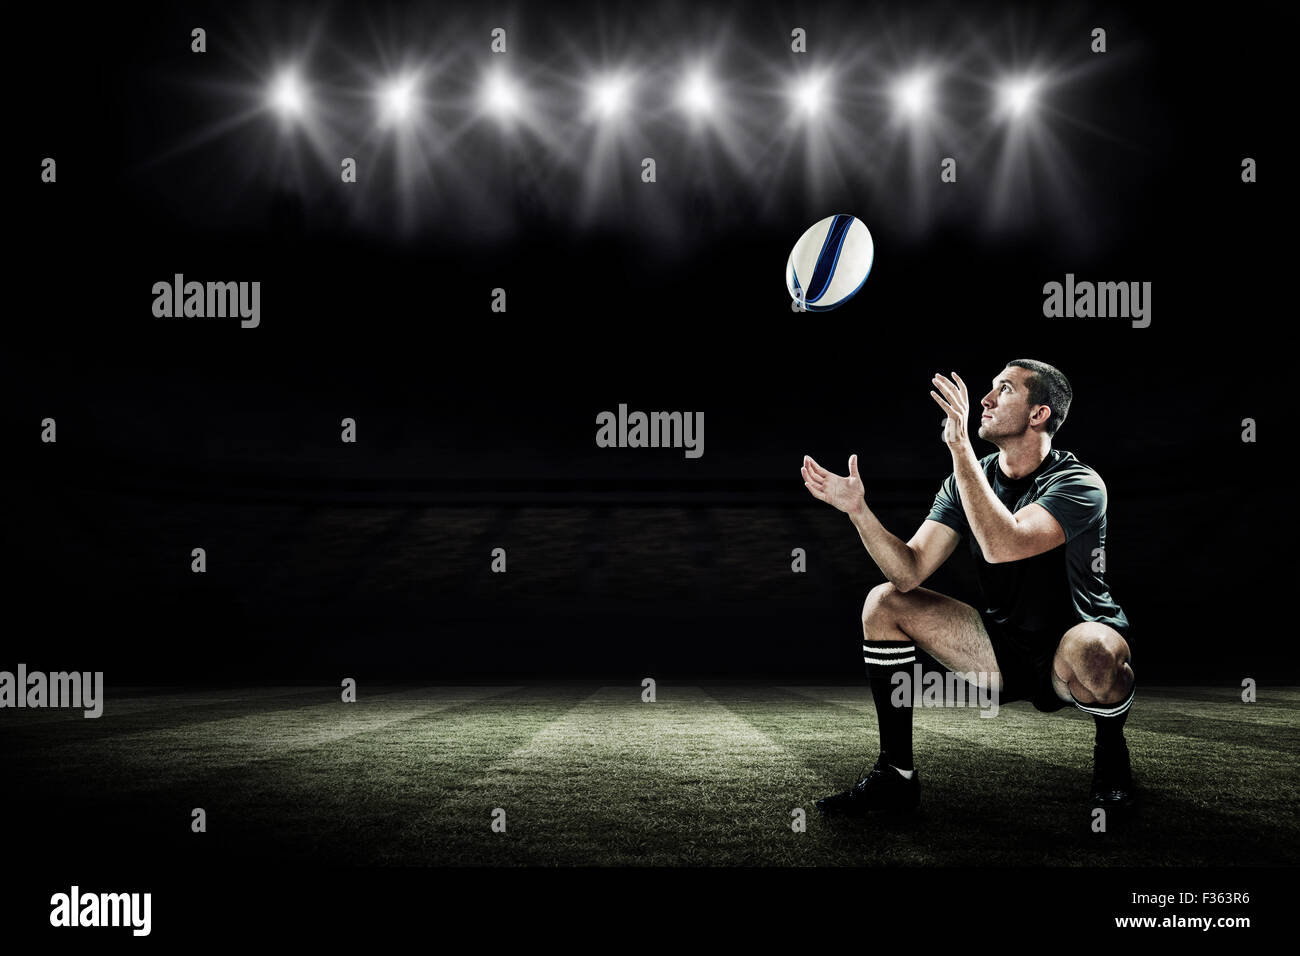 Immagine composita di lunghezza completa di giocatore di rugby cattura la sfera Foto Stock